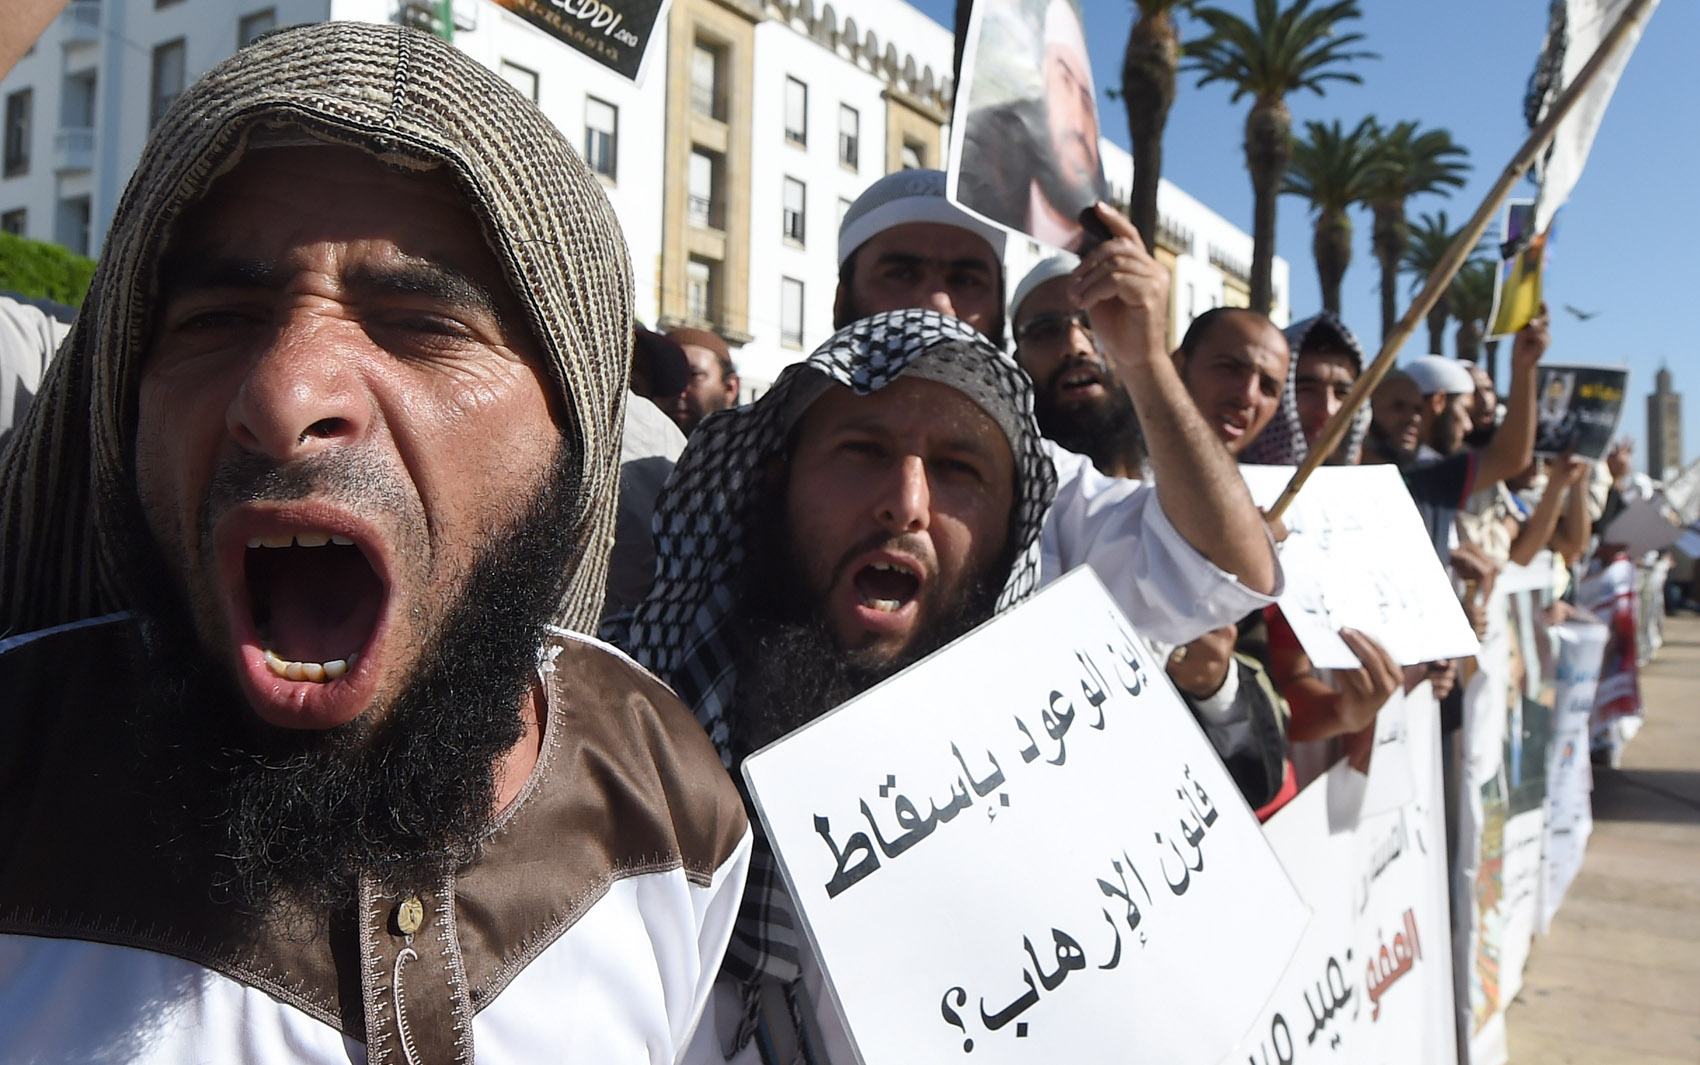 Defensores de salafistas presos gritam slogans e exibem cartazes durante uma manifestação em frente ao Parlamento em Rabat, no Marrocos. Eles pedem a libertação das pessoas detidas com ligação a atentados suicidas em Casablanca, em 2003